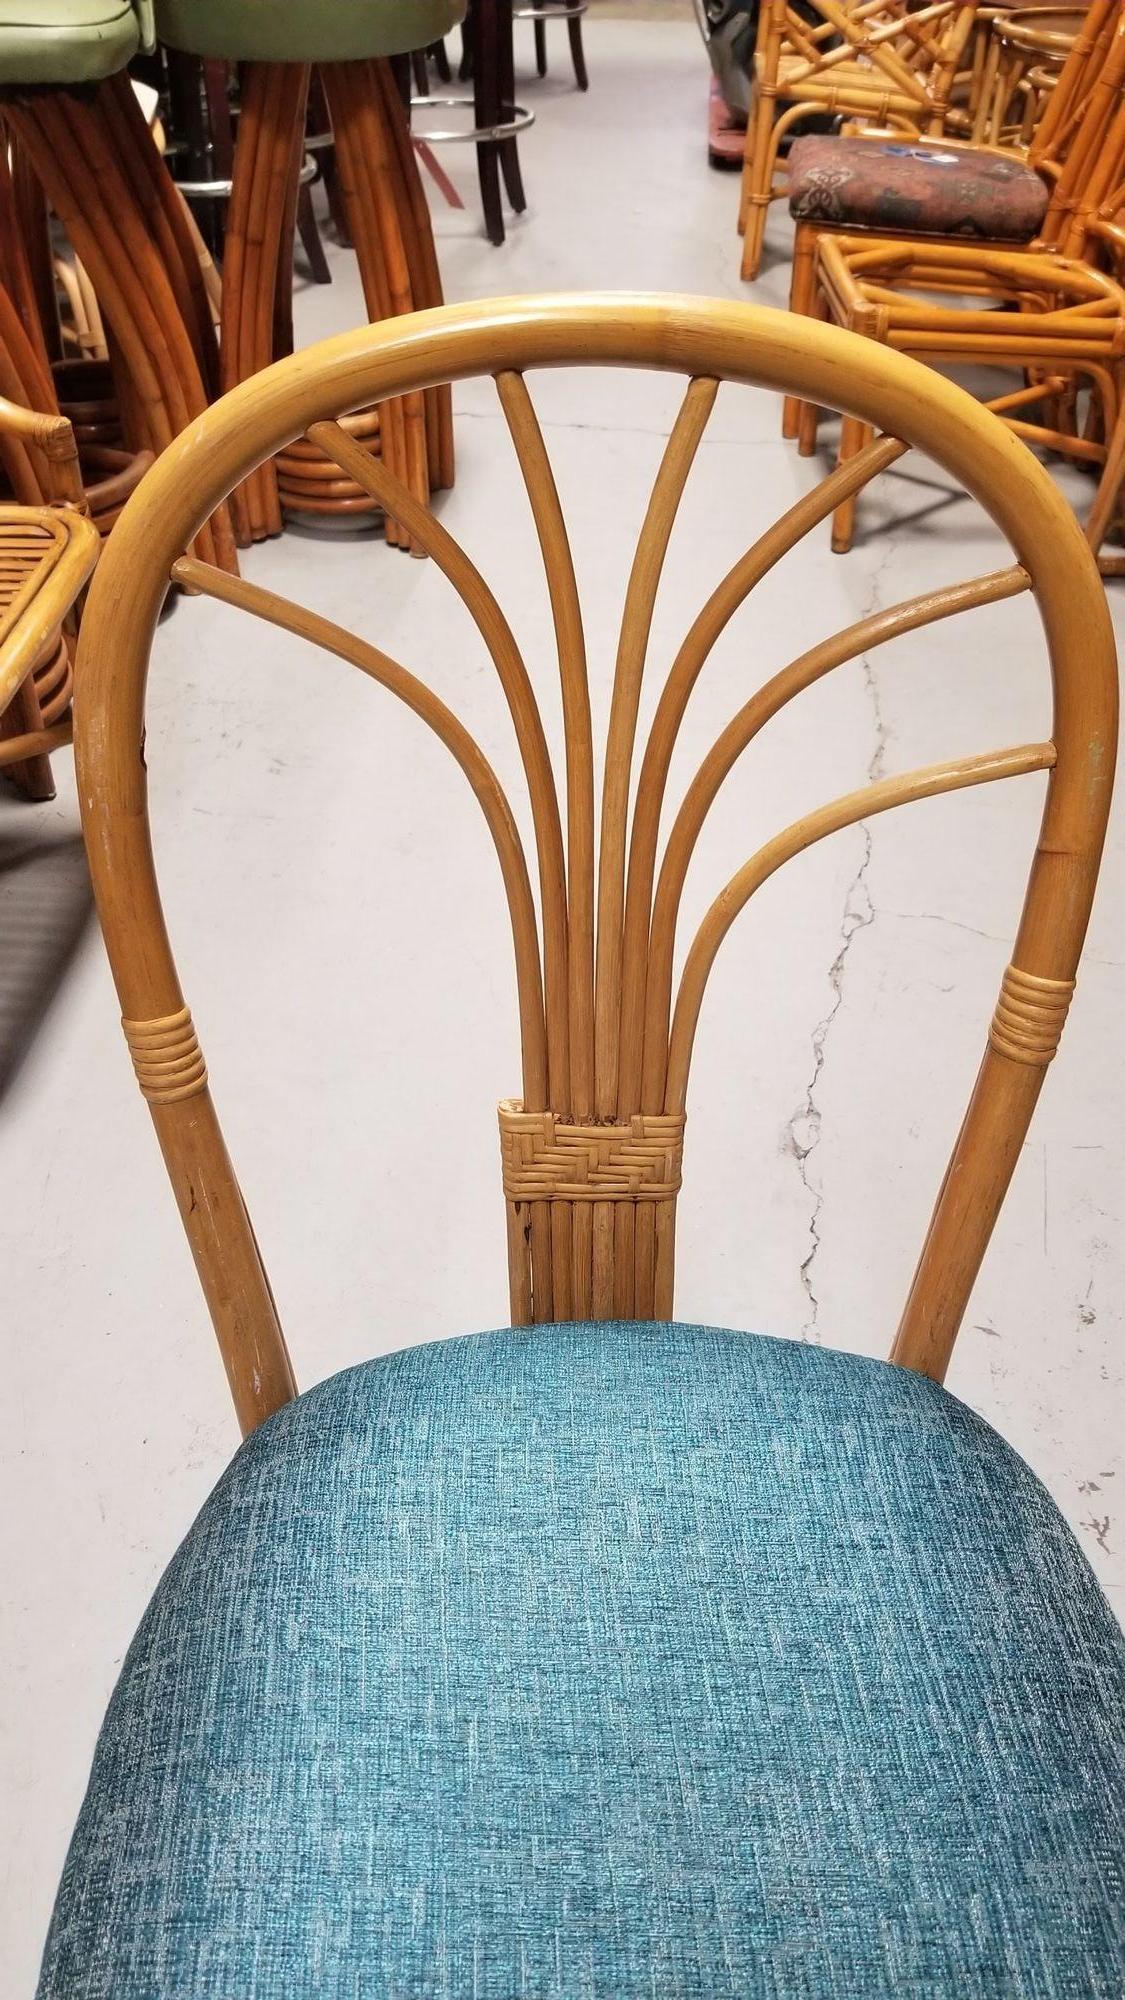 Ein Paar postmoderne Rattan-Ess- oder Beistellstühle mit Fächerrücken aus den 1980er Jahren und teeblauen Sitzkissen.

Circa 1980er Jahre

Wir kaufen und verkaufen nur die besten und feinsten Rattanmöbel, die von den besten und bekanntesten